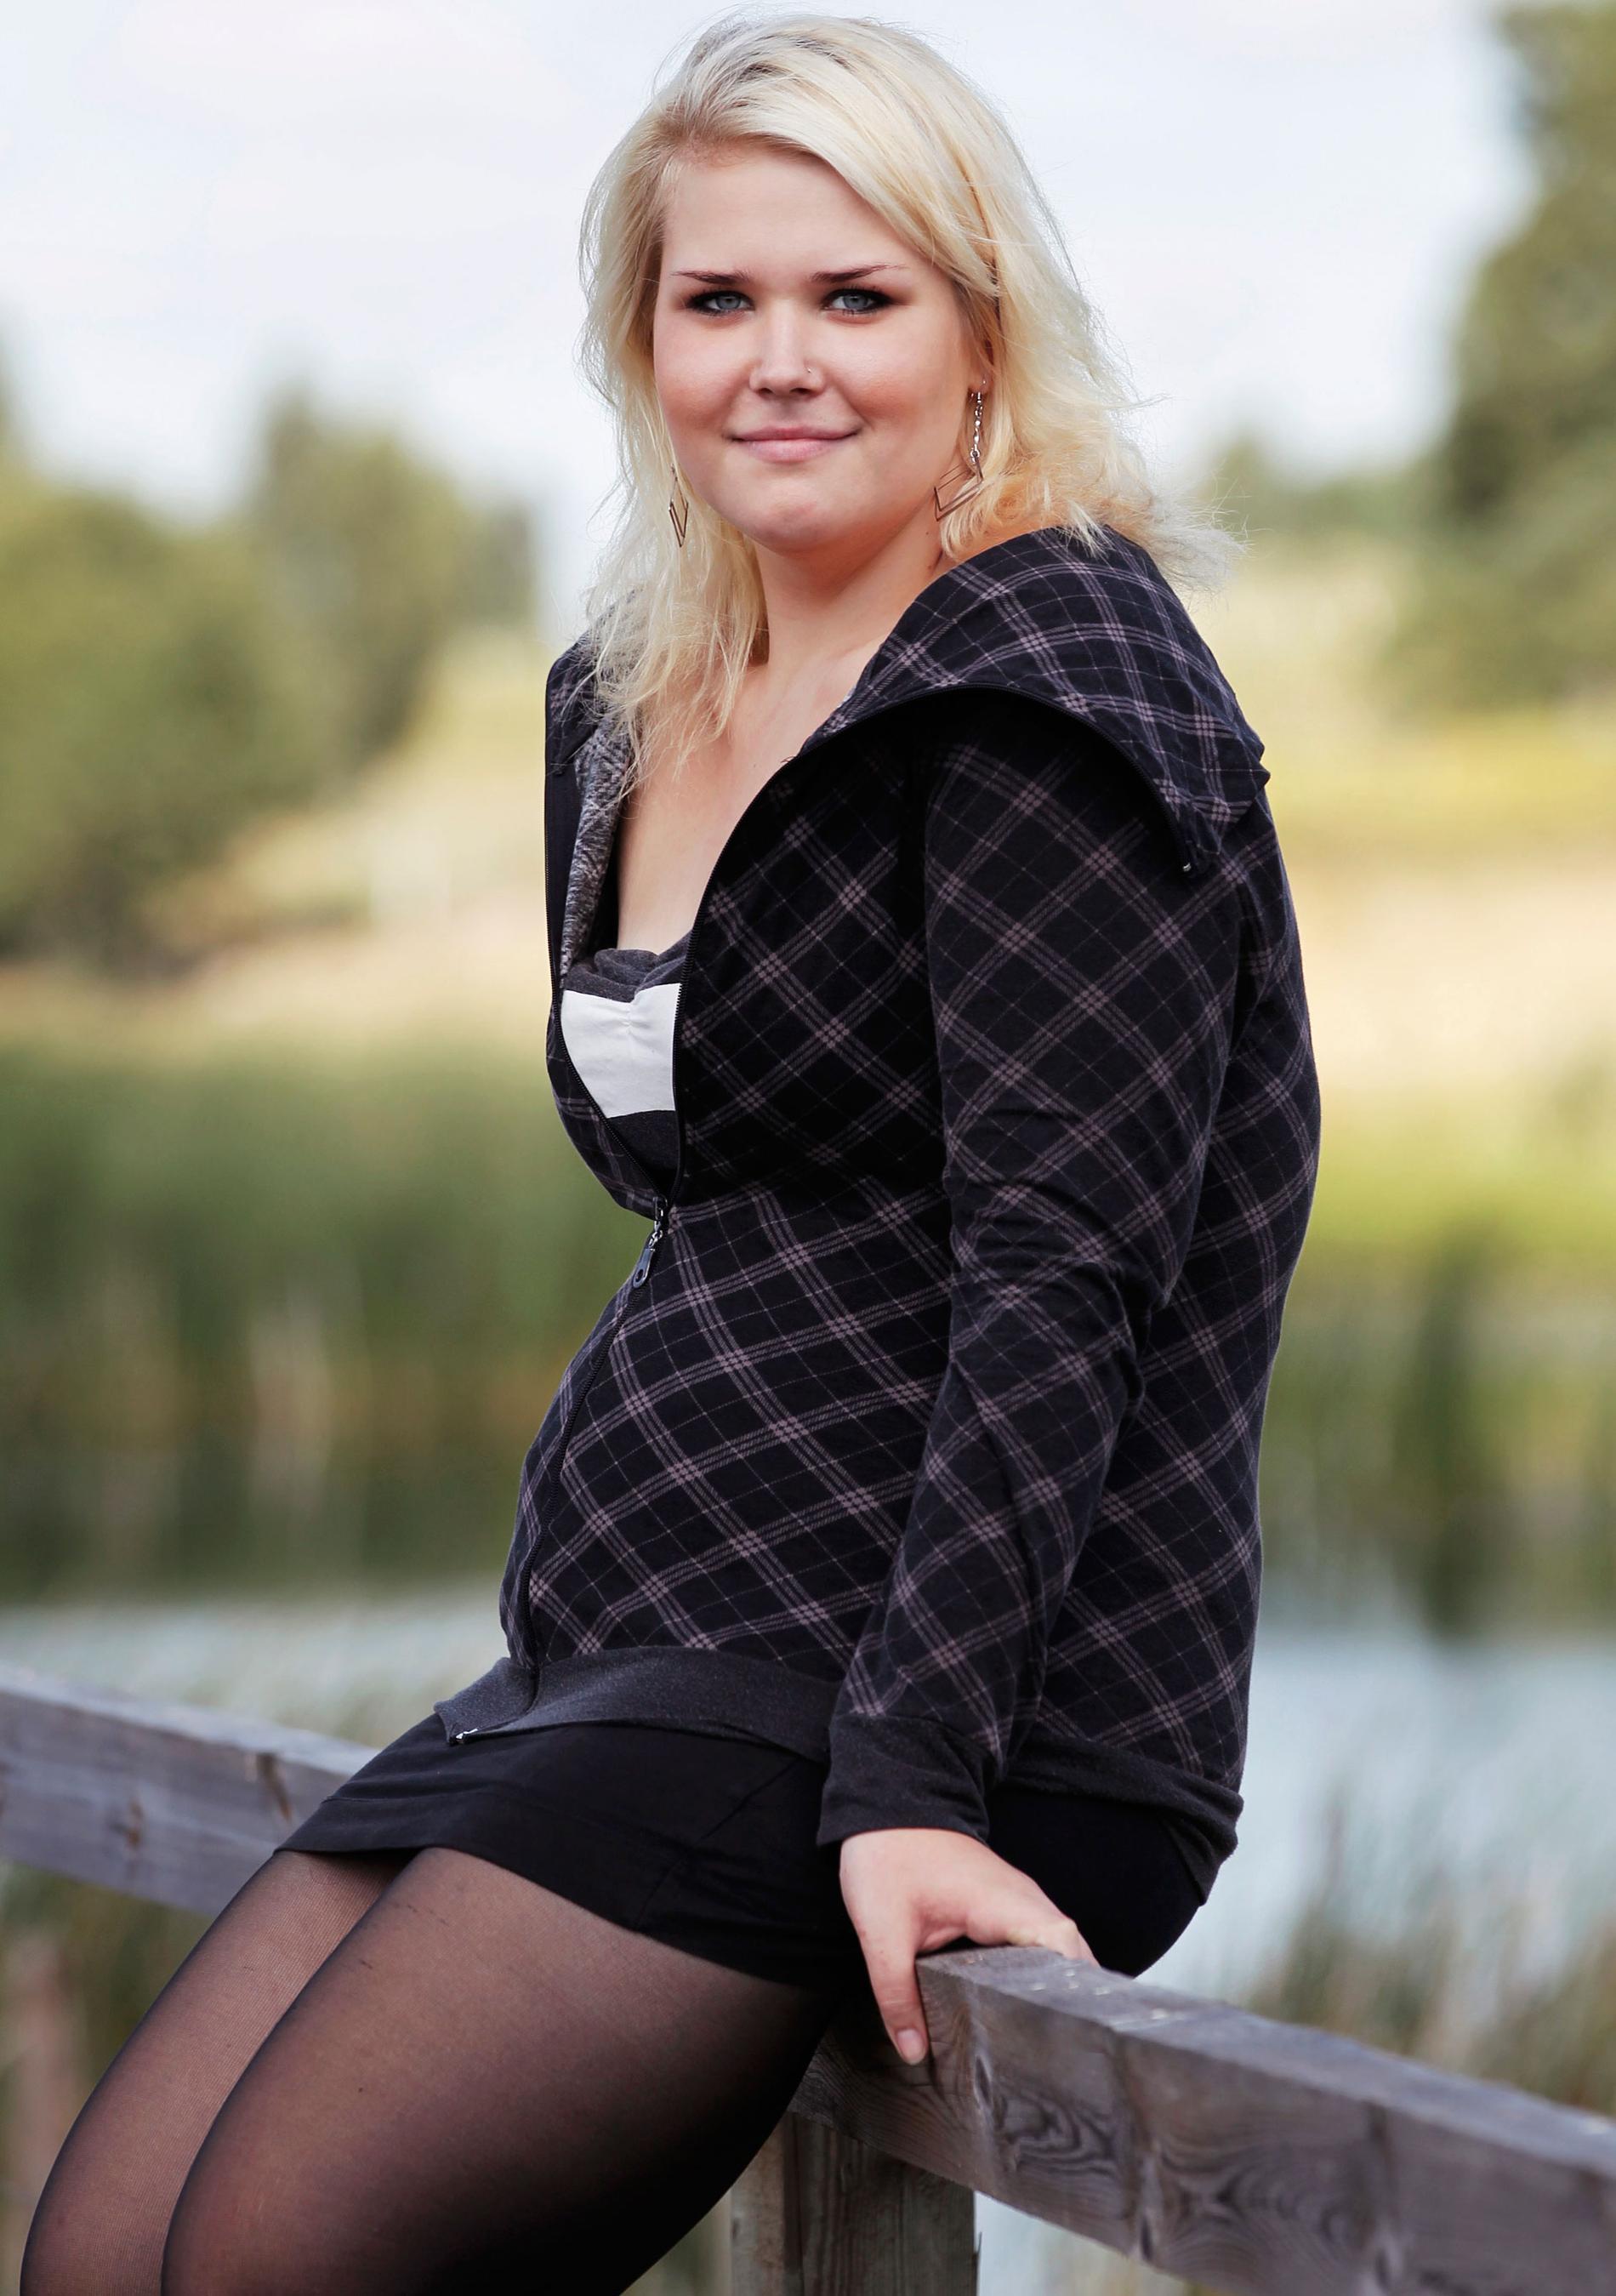 Martina Kähkölä har gått ner 55 kilo efter sin gastric bypass-operation.